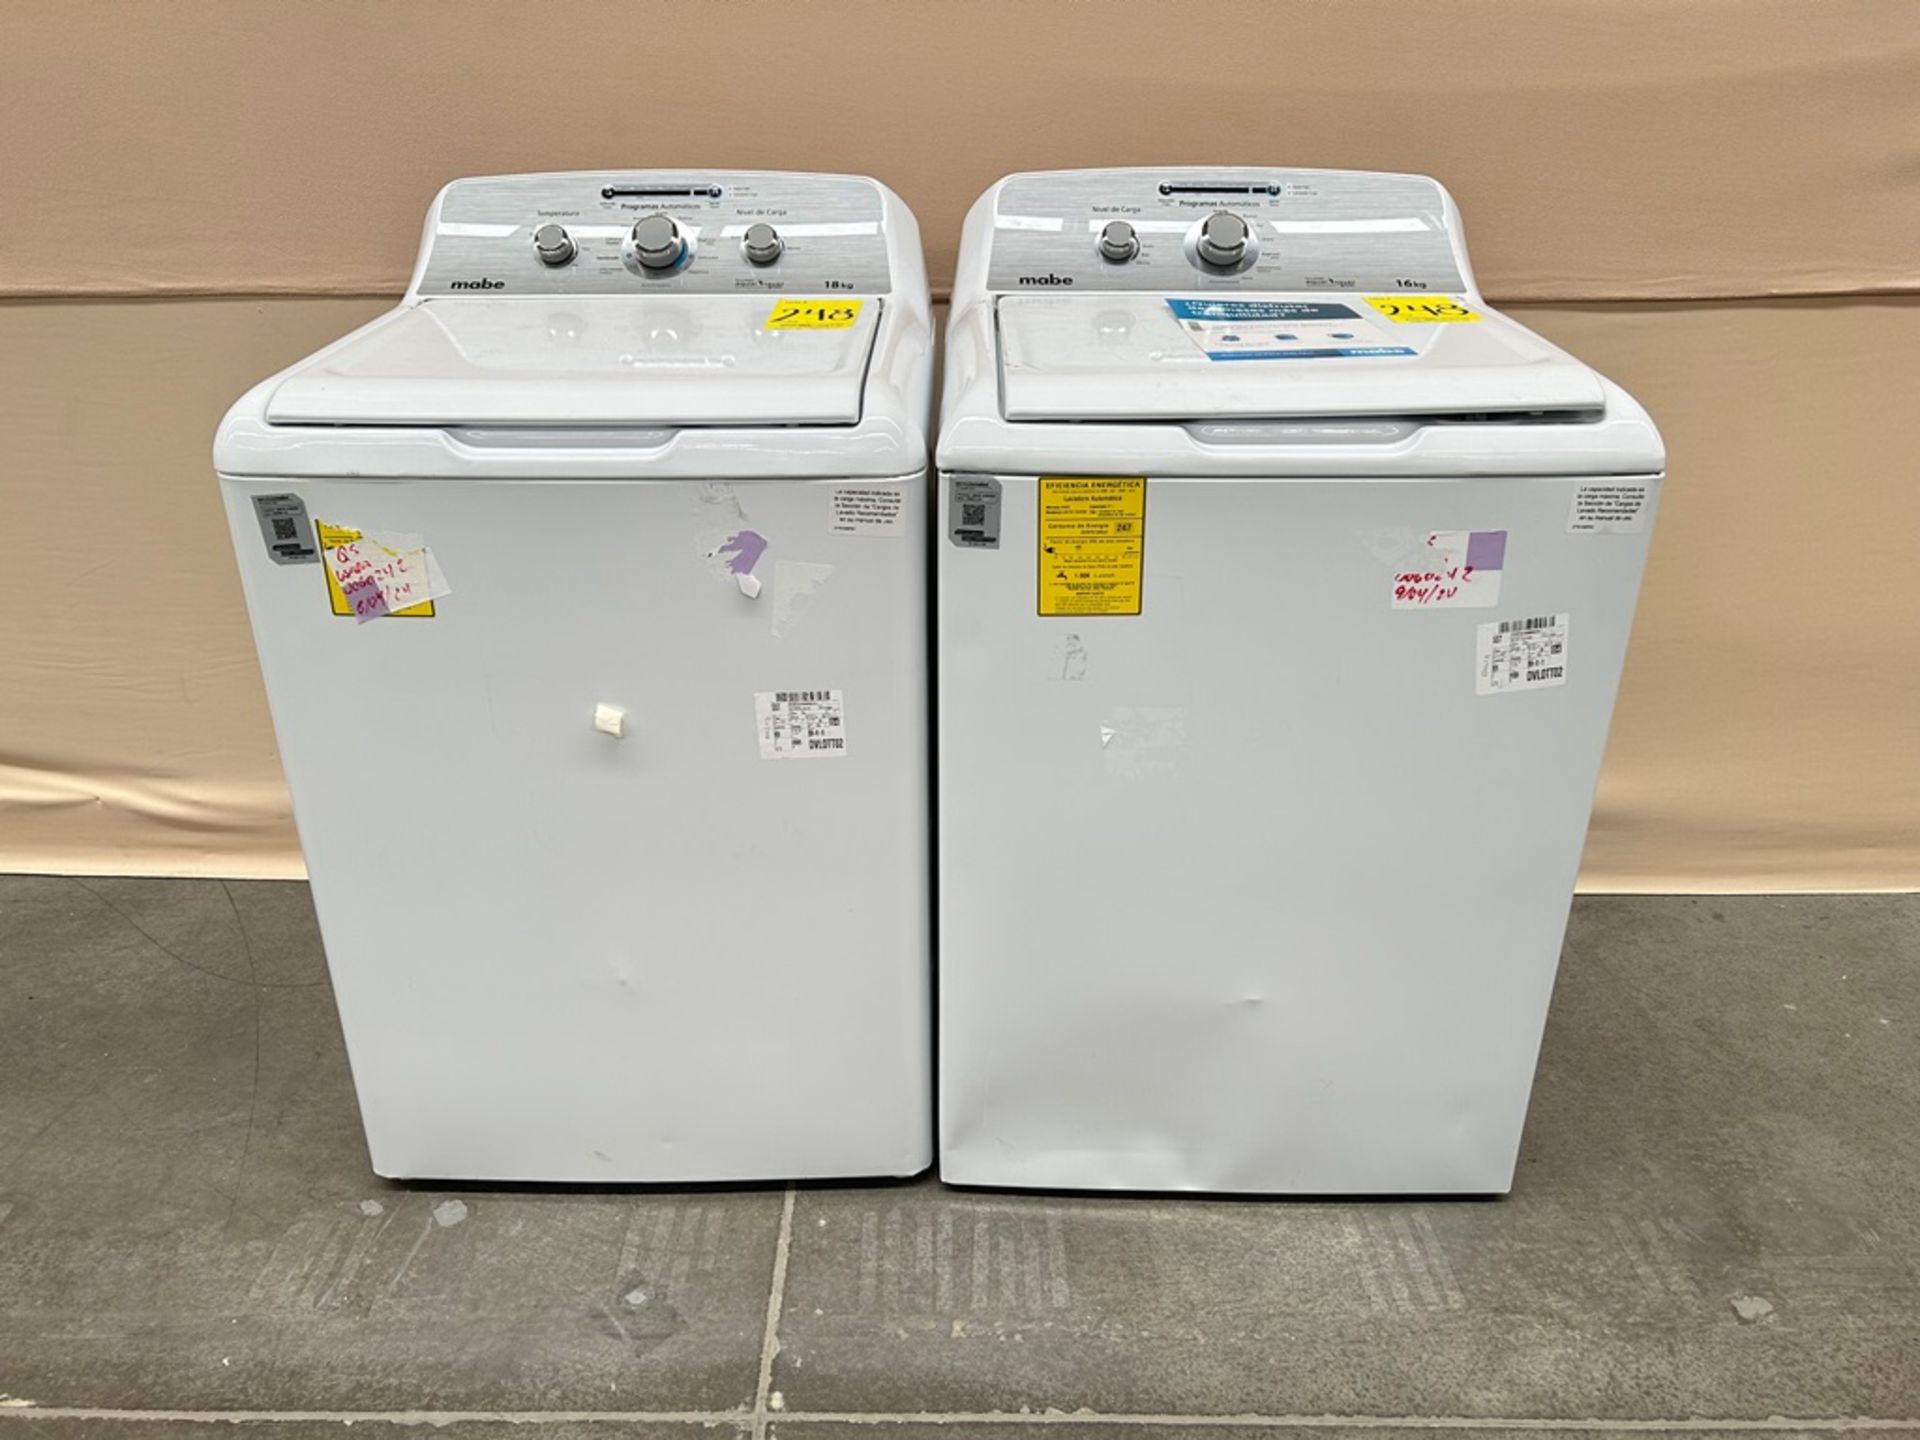 Lote de 2 lavadoras contiene: 1 Lavadora de 18 KG Marca MABE, Modelo LMA78113CBAB01, Serie S91112,